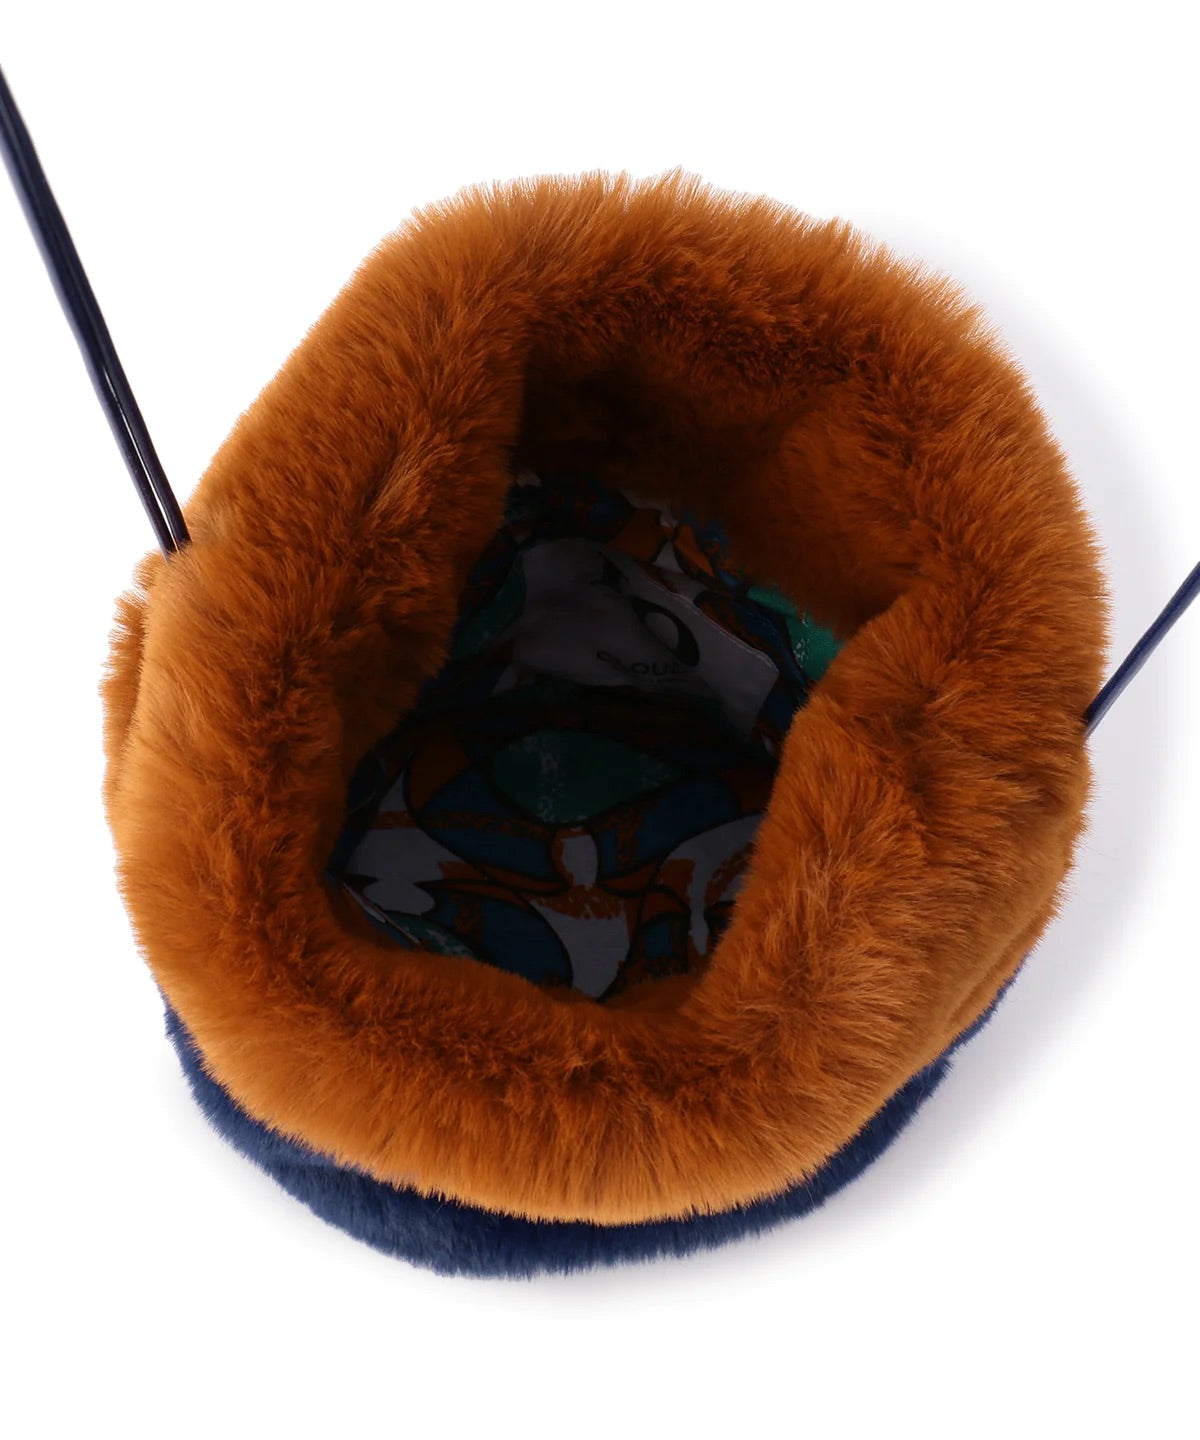 【期間限定ポーチS付き】Eco Fur Drawstring Bag (Small) BROWN×NAVY